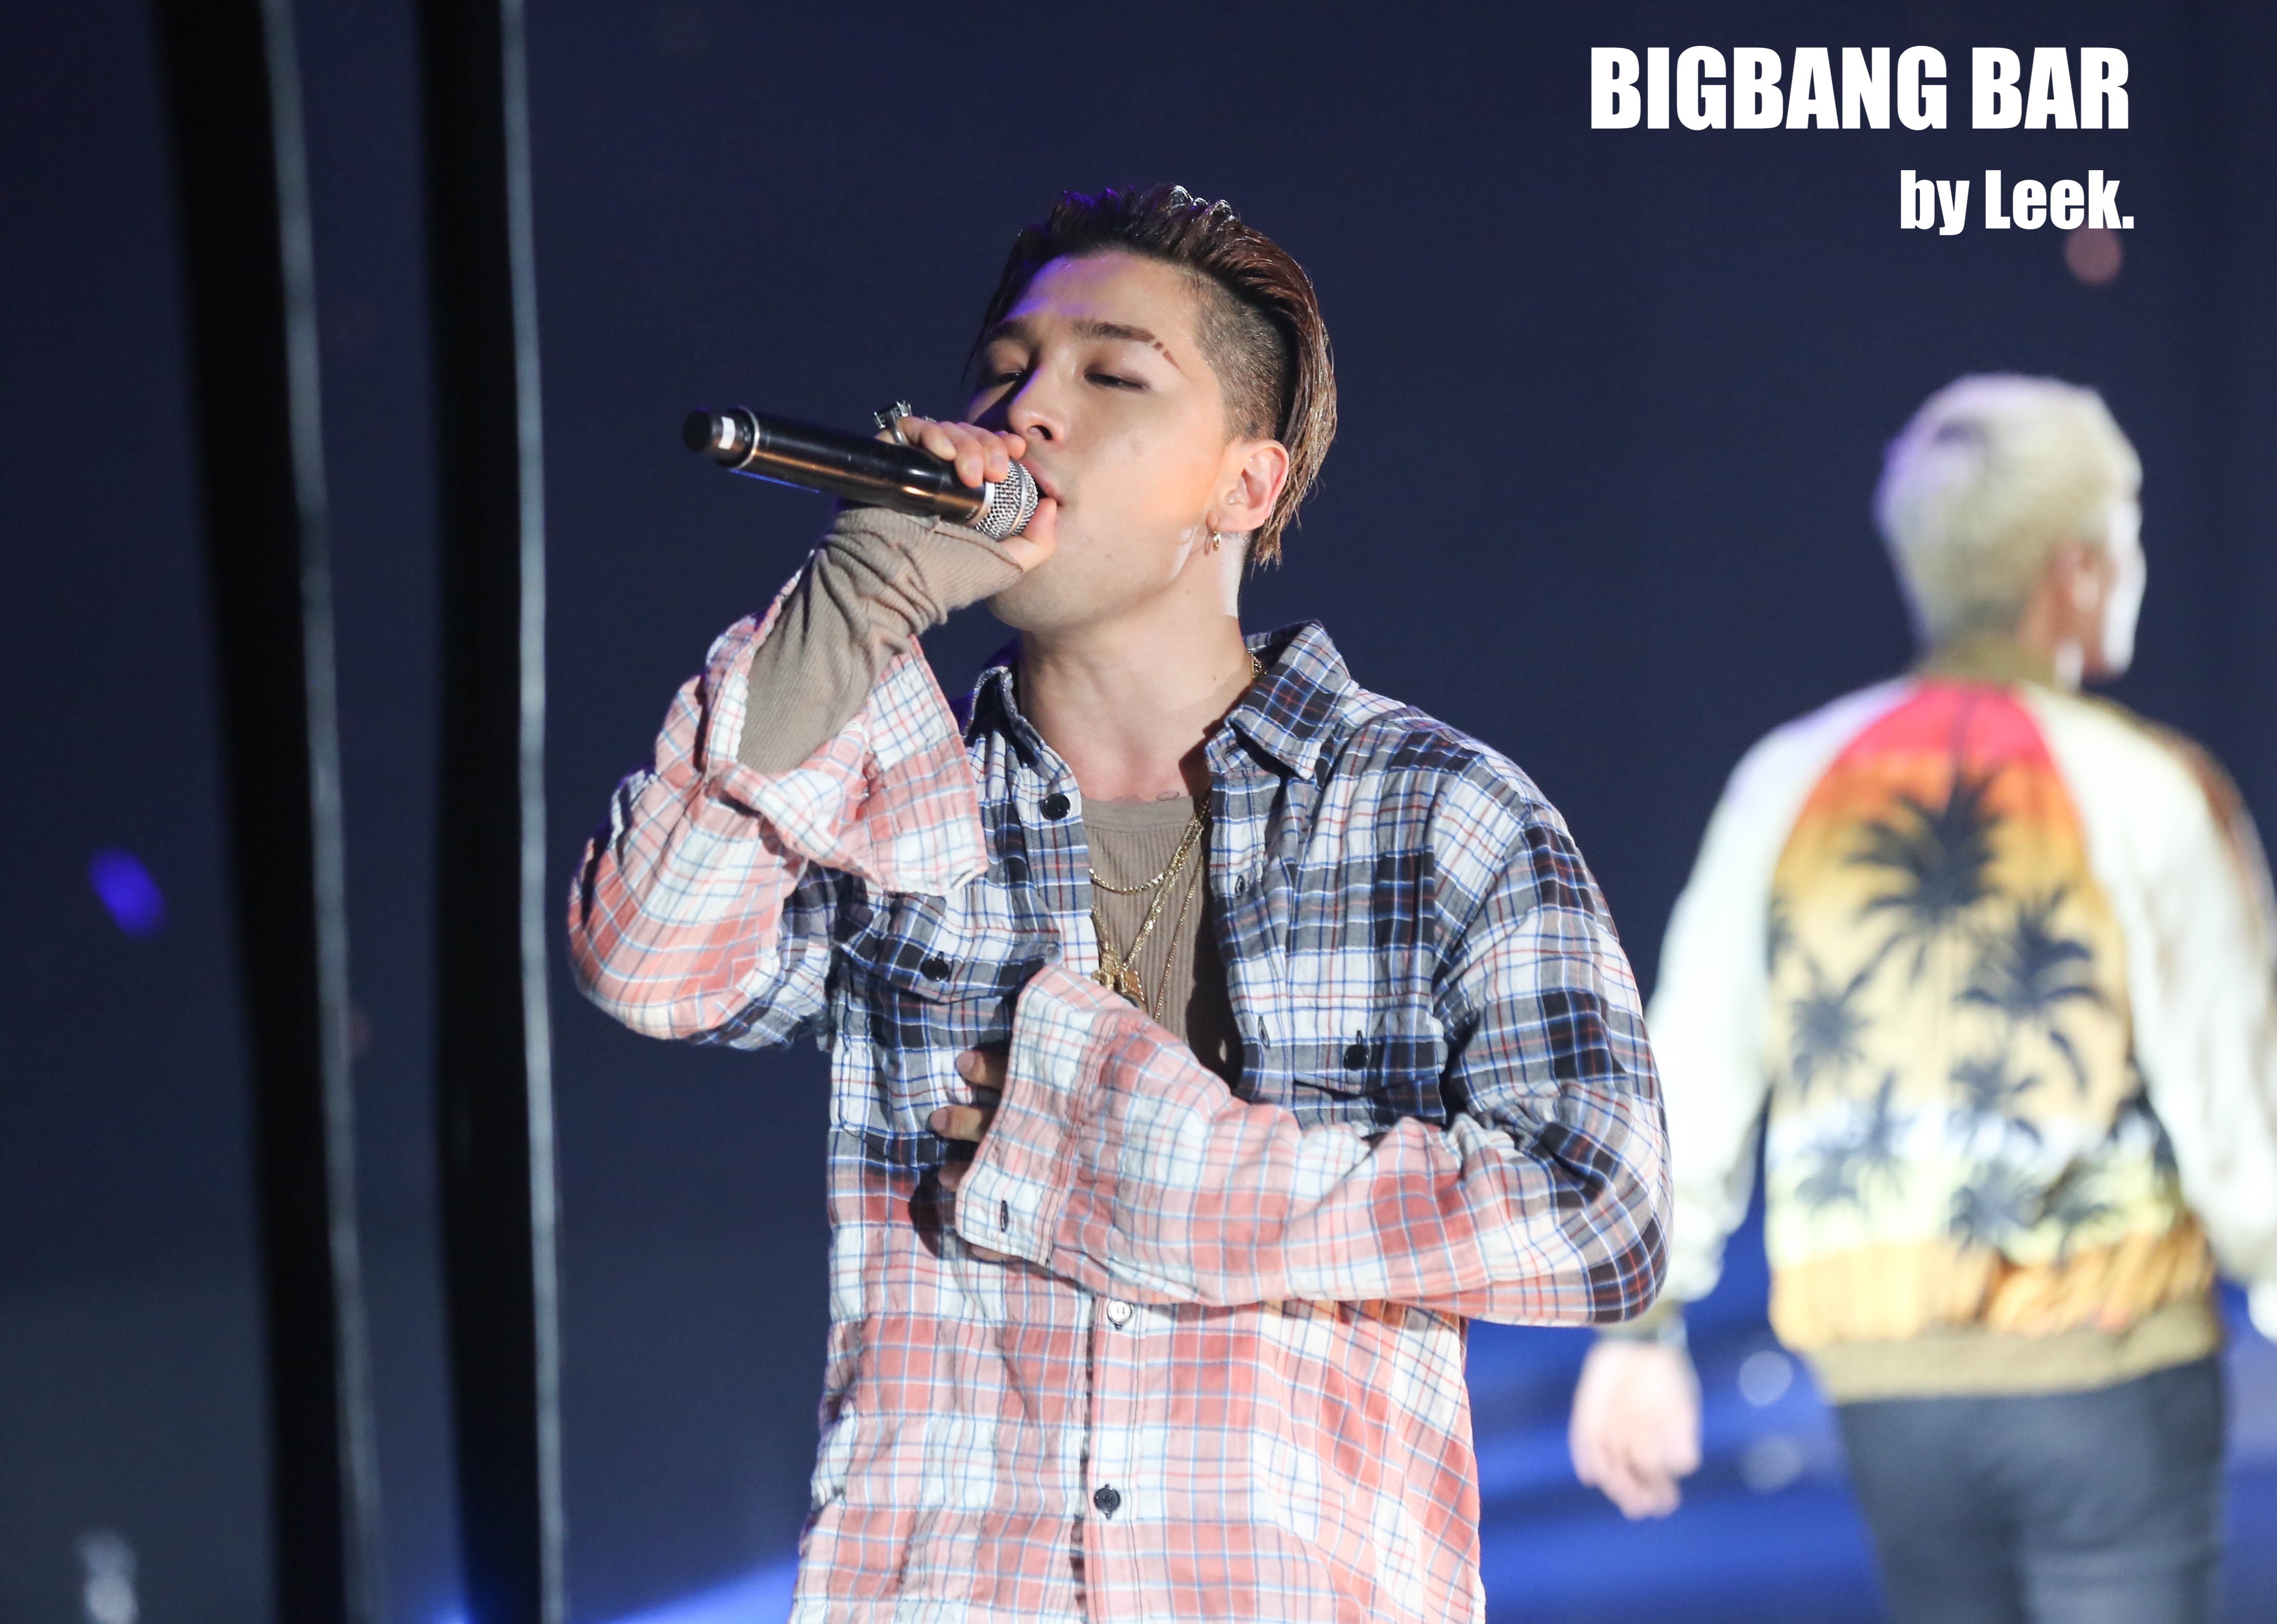 BIGBANG VIPevent Beijing 2016-01-01 By BIGBANGBar By Leek (30)